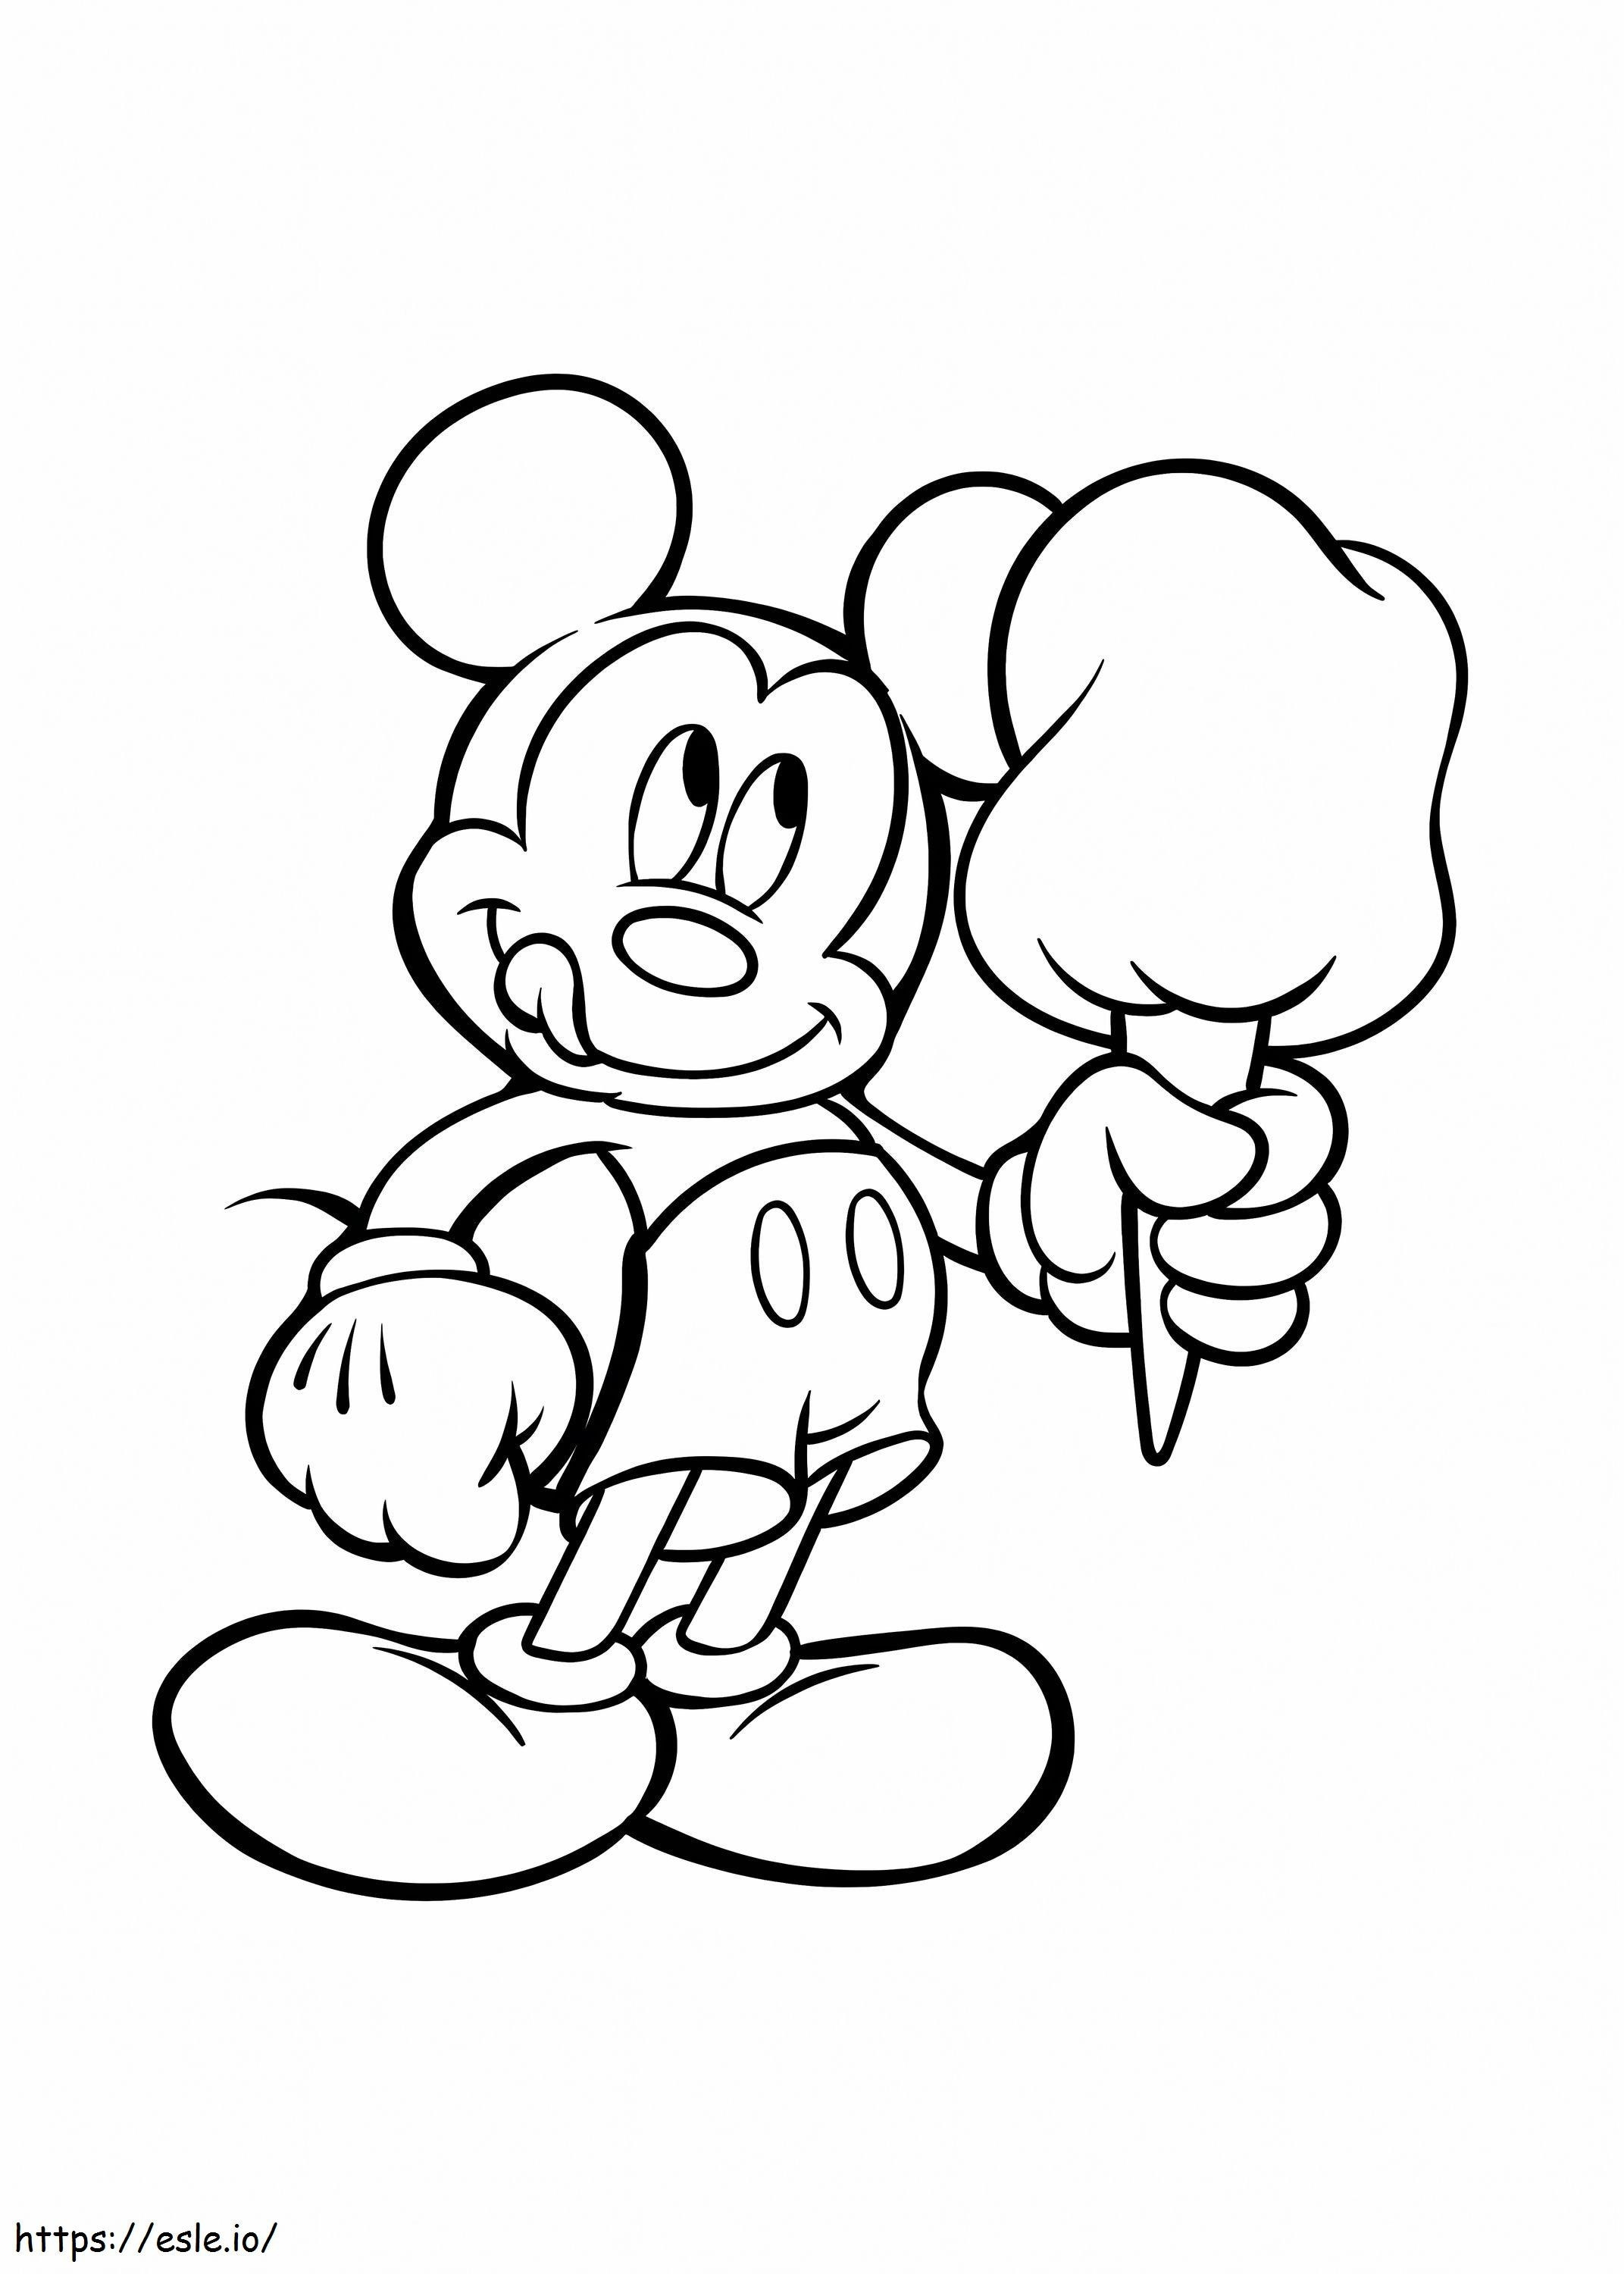 Mickey Mouse ținând în mână o înghețată de colorat